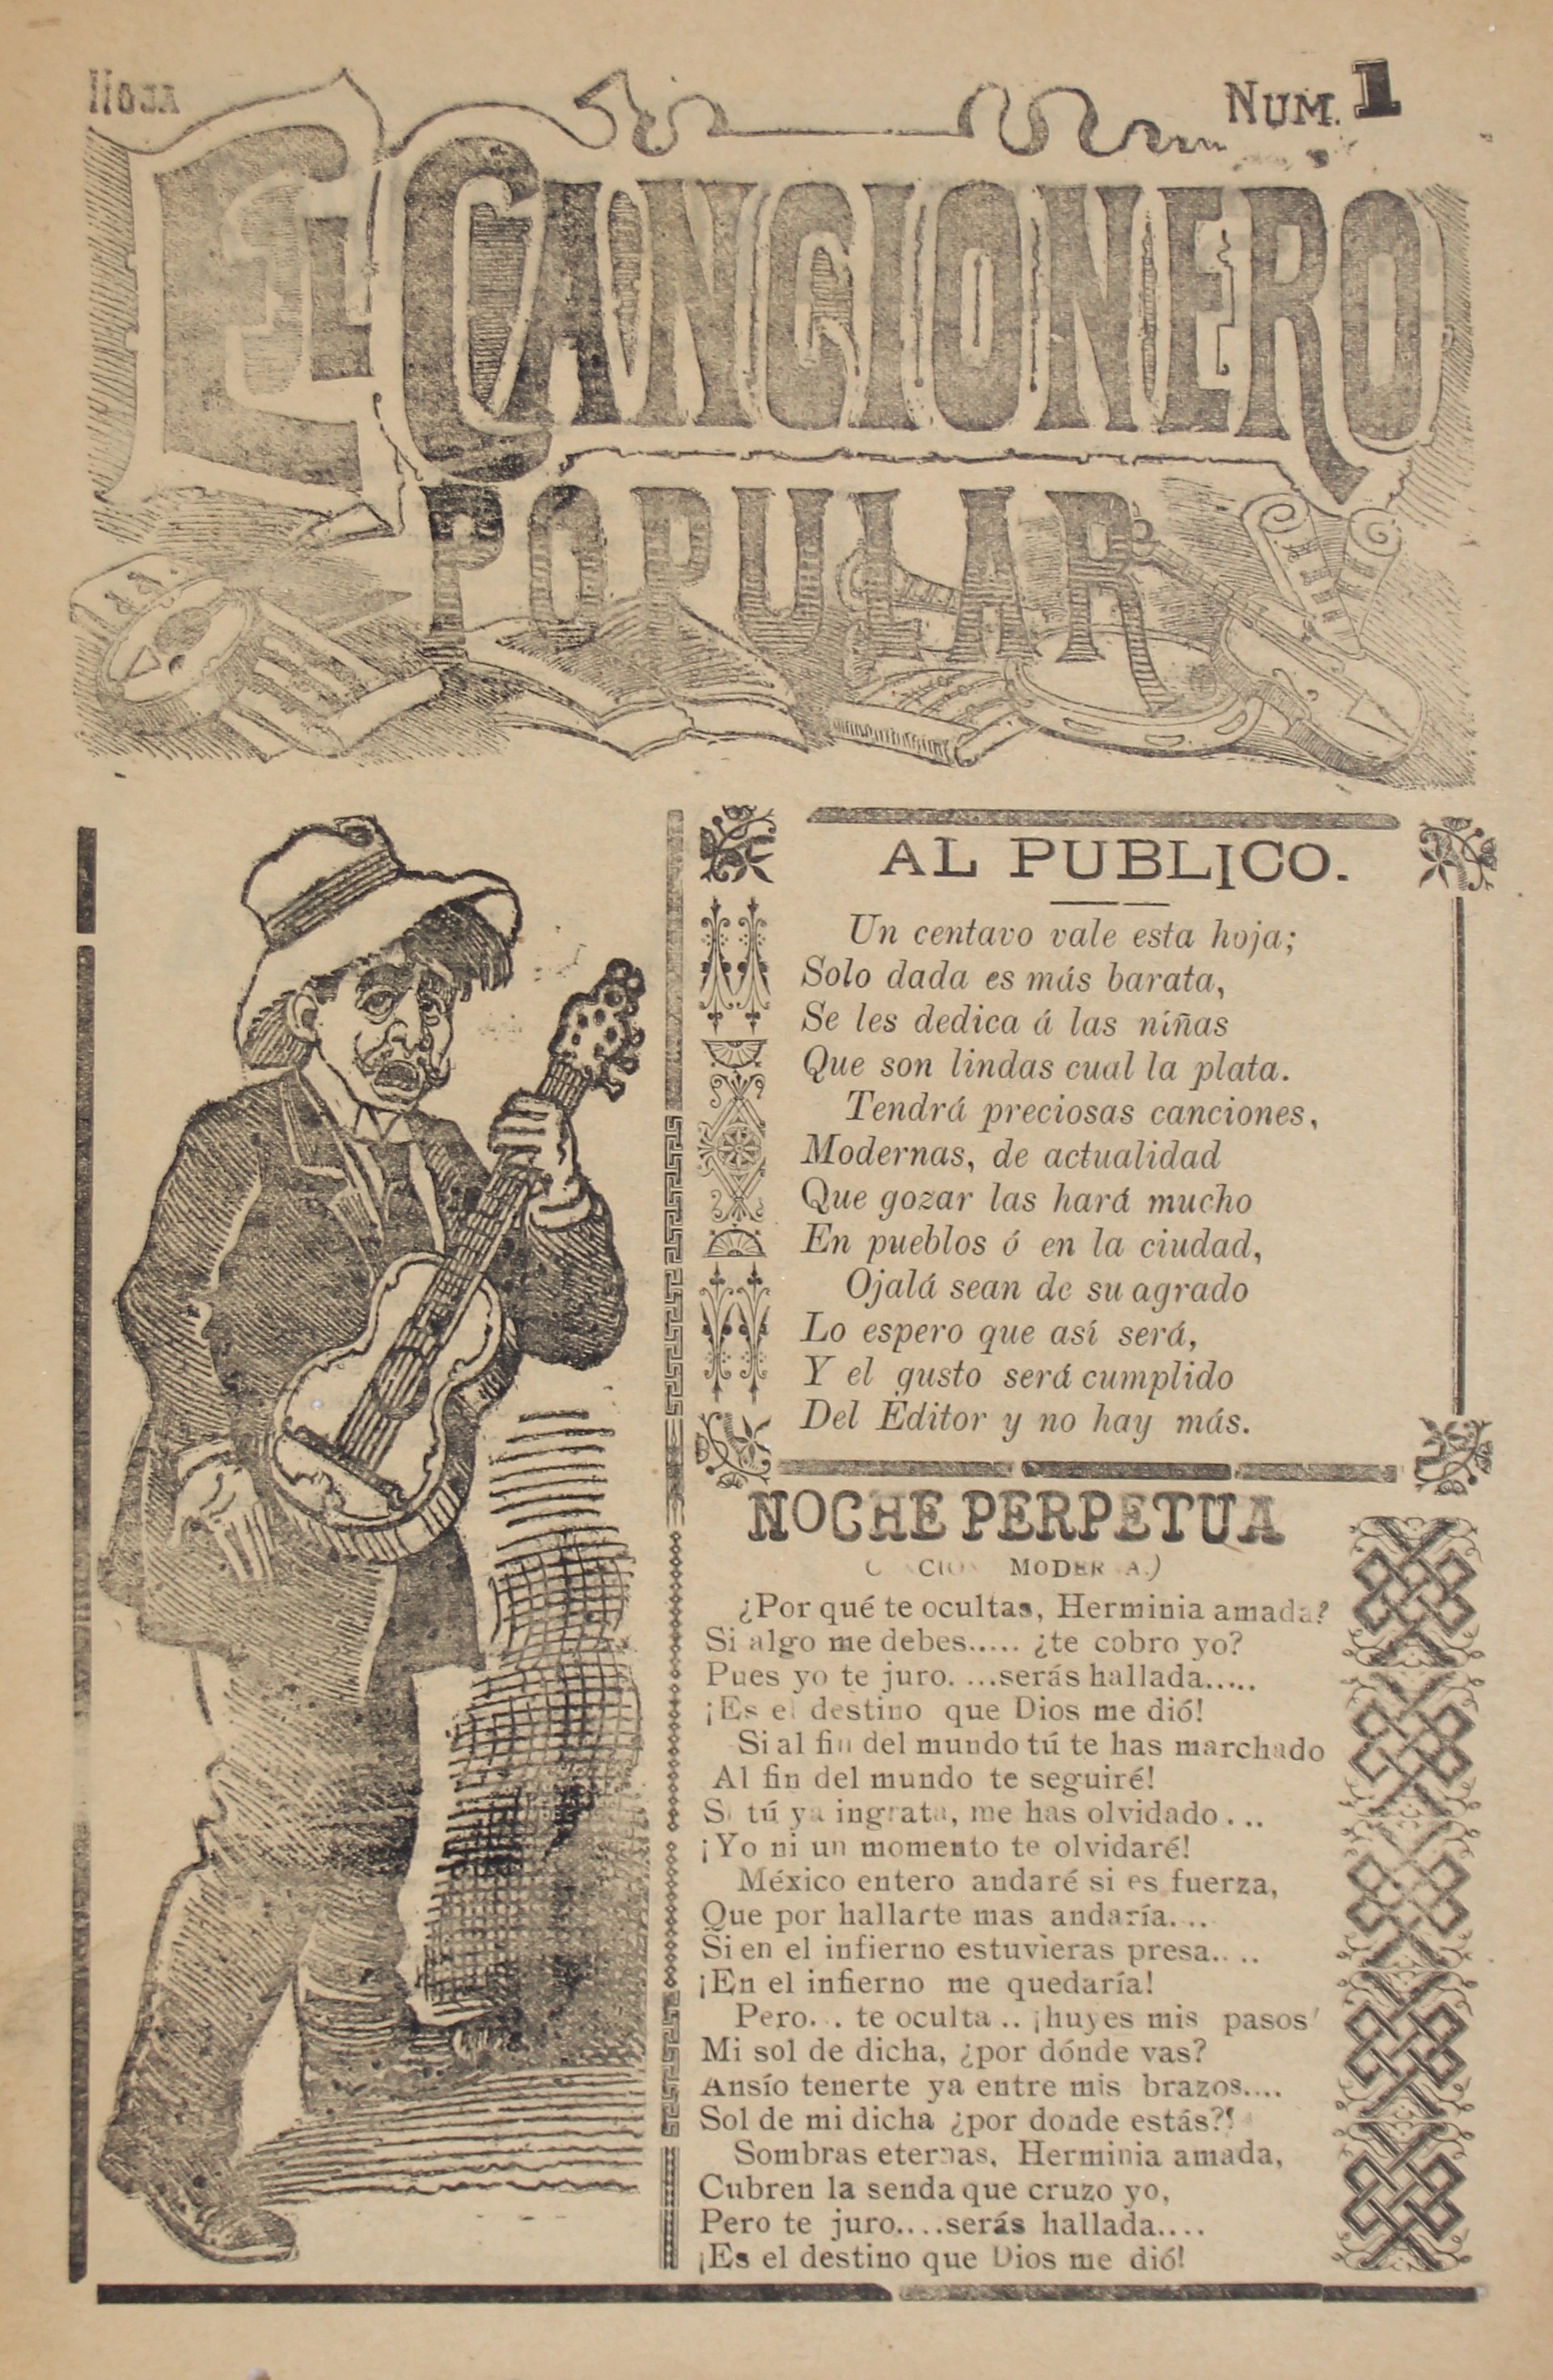 El Cancionero Popular #1 by José Guadalupe Posada